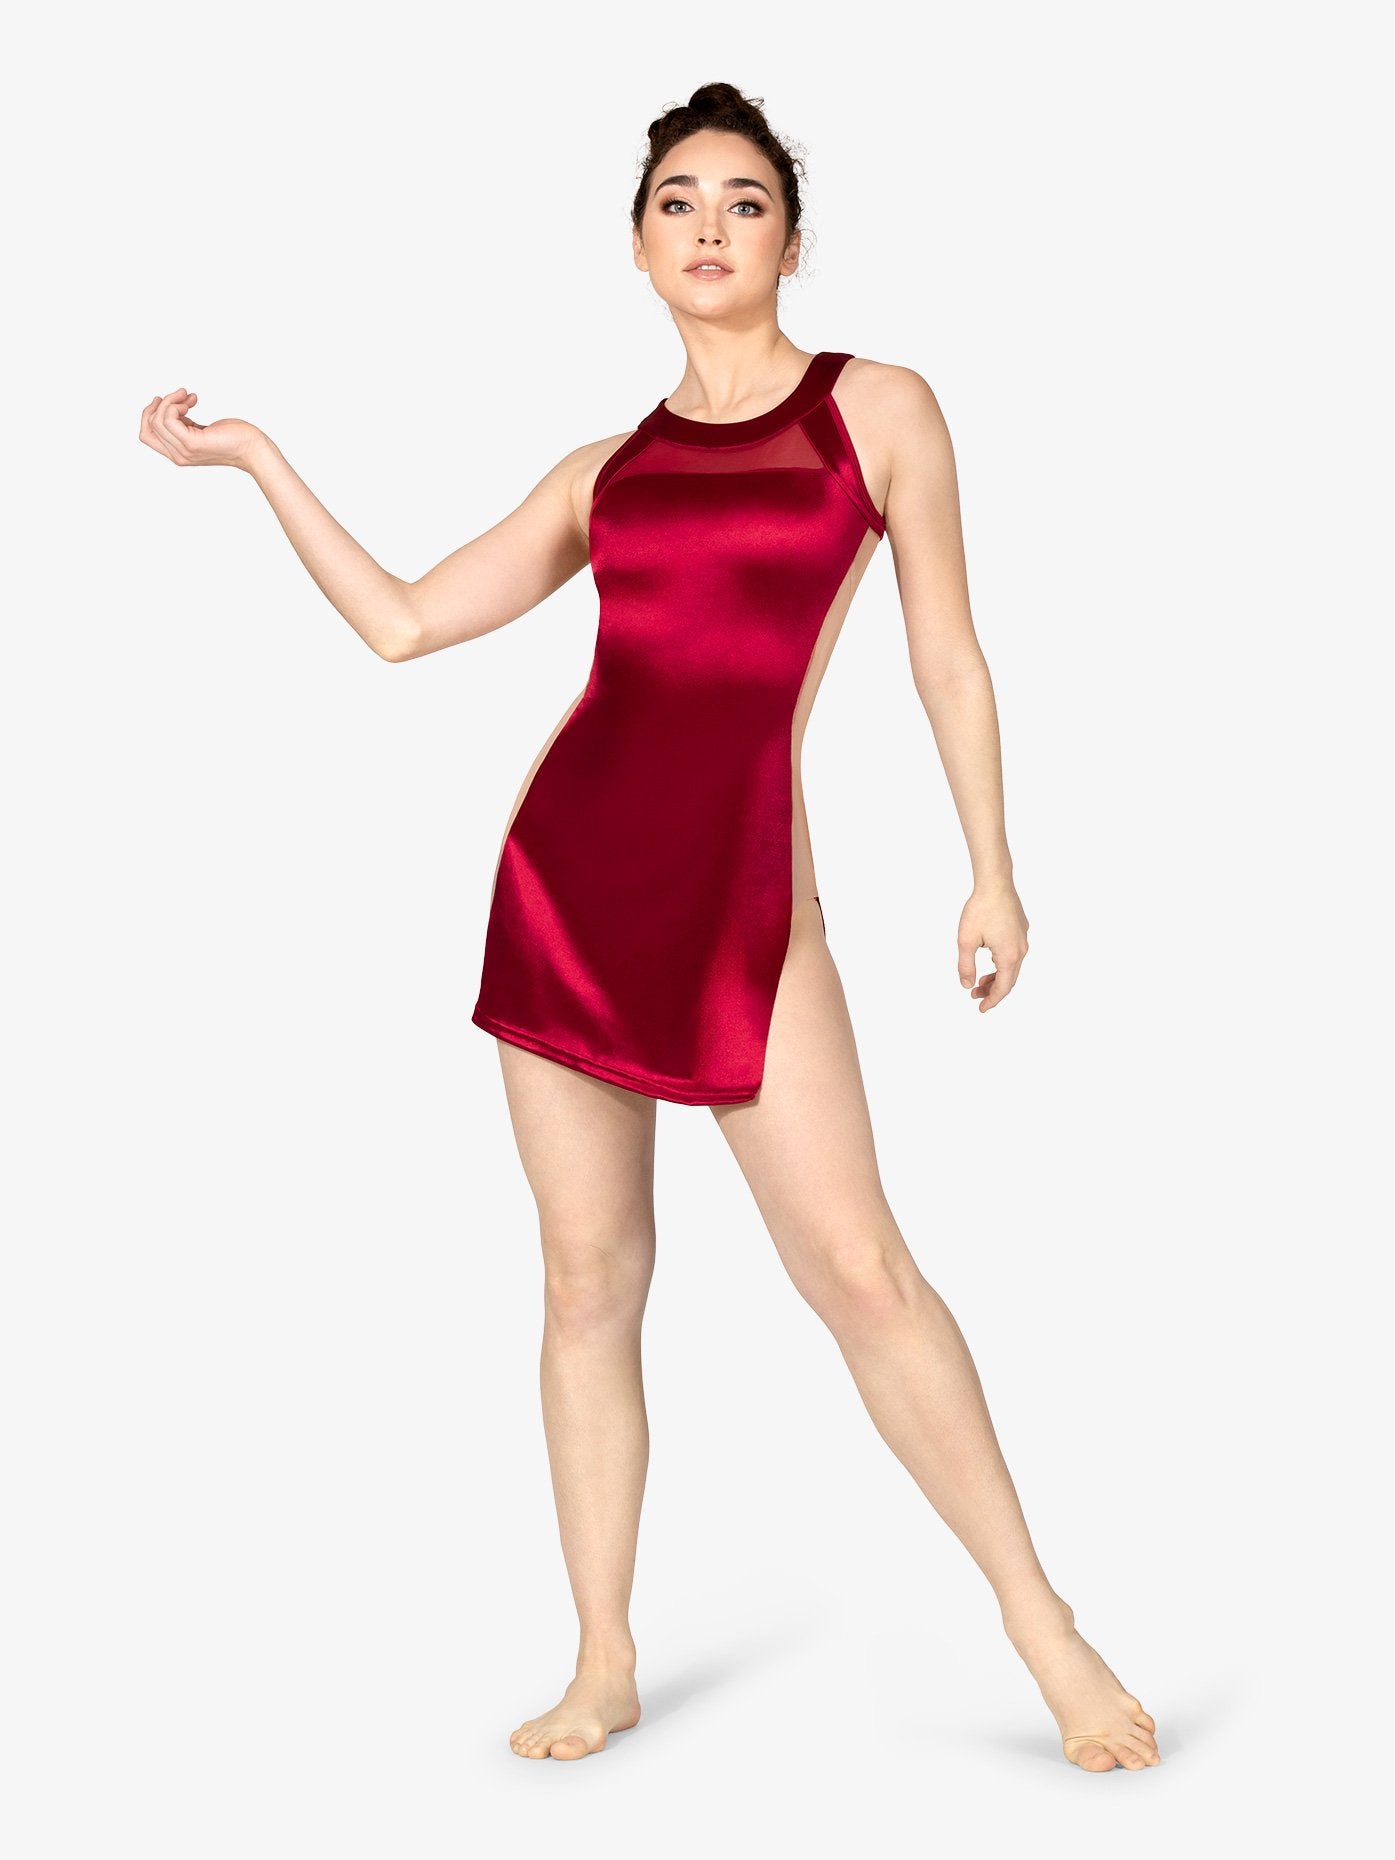 ダブルプラチナム イリュージョン サテン & メッシュ チュニック パフォーマンス ドレス - レッド【大人】Double Platinum Womens Illusion Satin and Mesh Tunic Performance Dress - Red